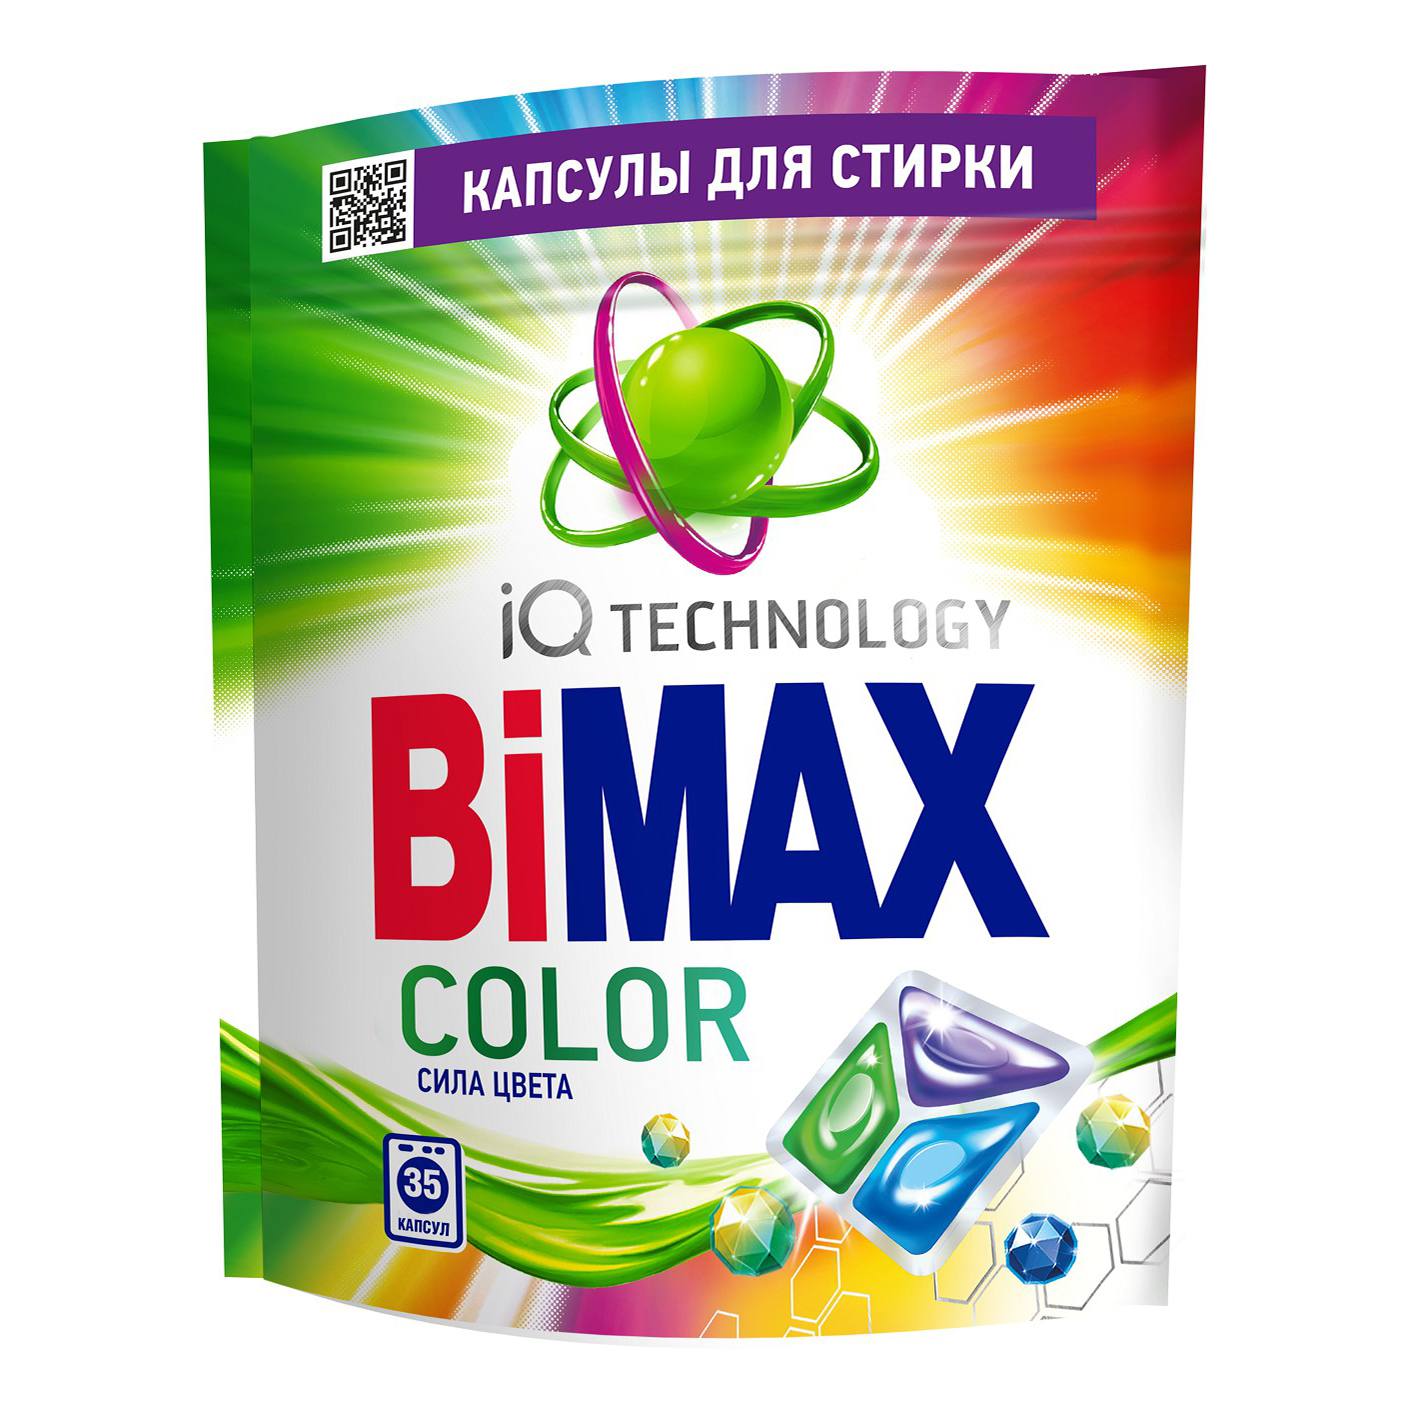 Капсулы BiMax Color для стирки цветного белья 35 шт